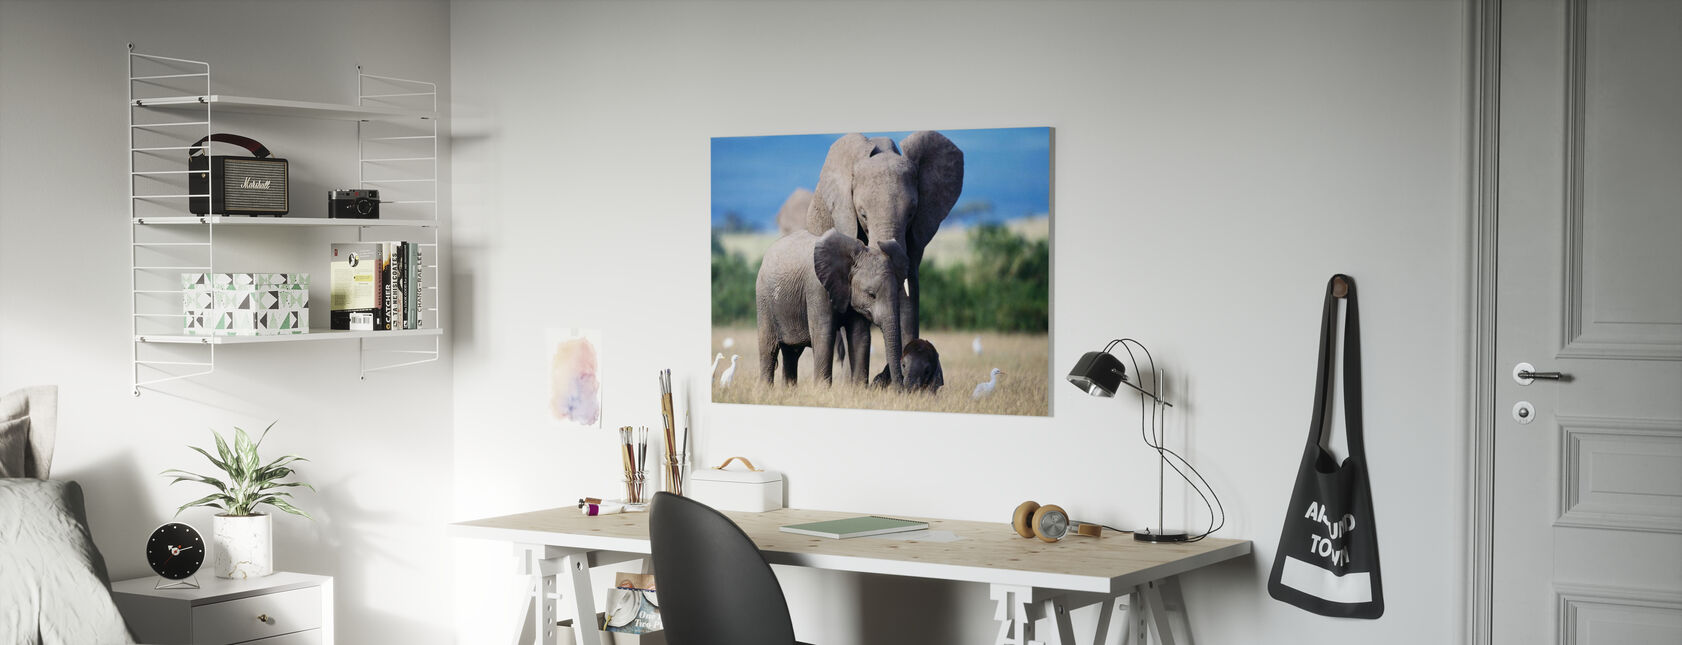 Famille des éléphants - Impression sur toile - Chambre des enfants